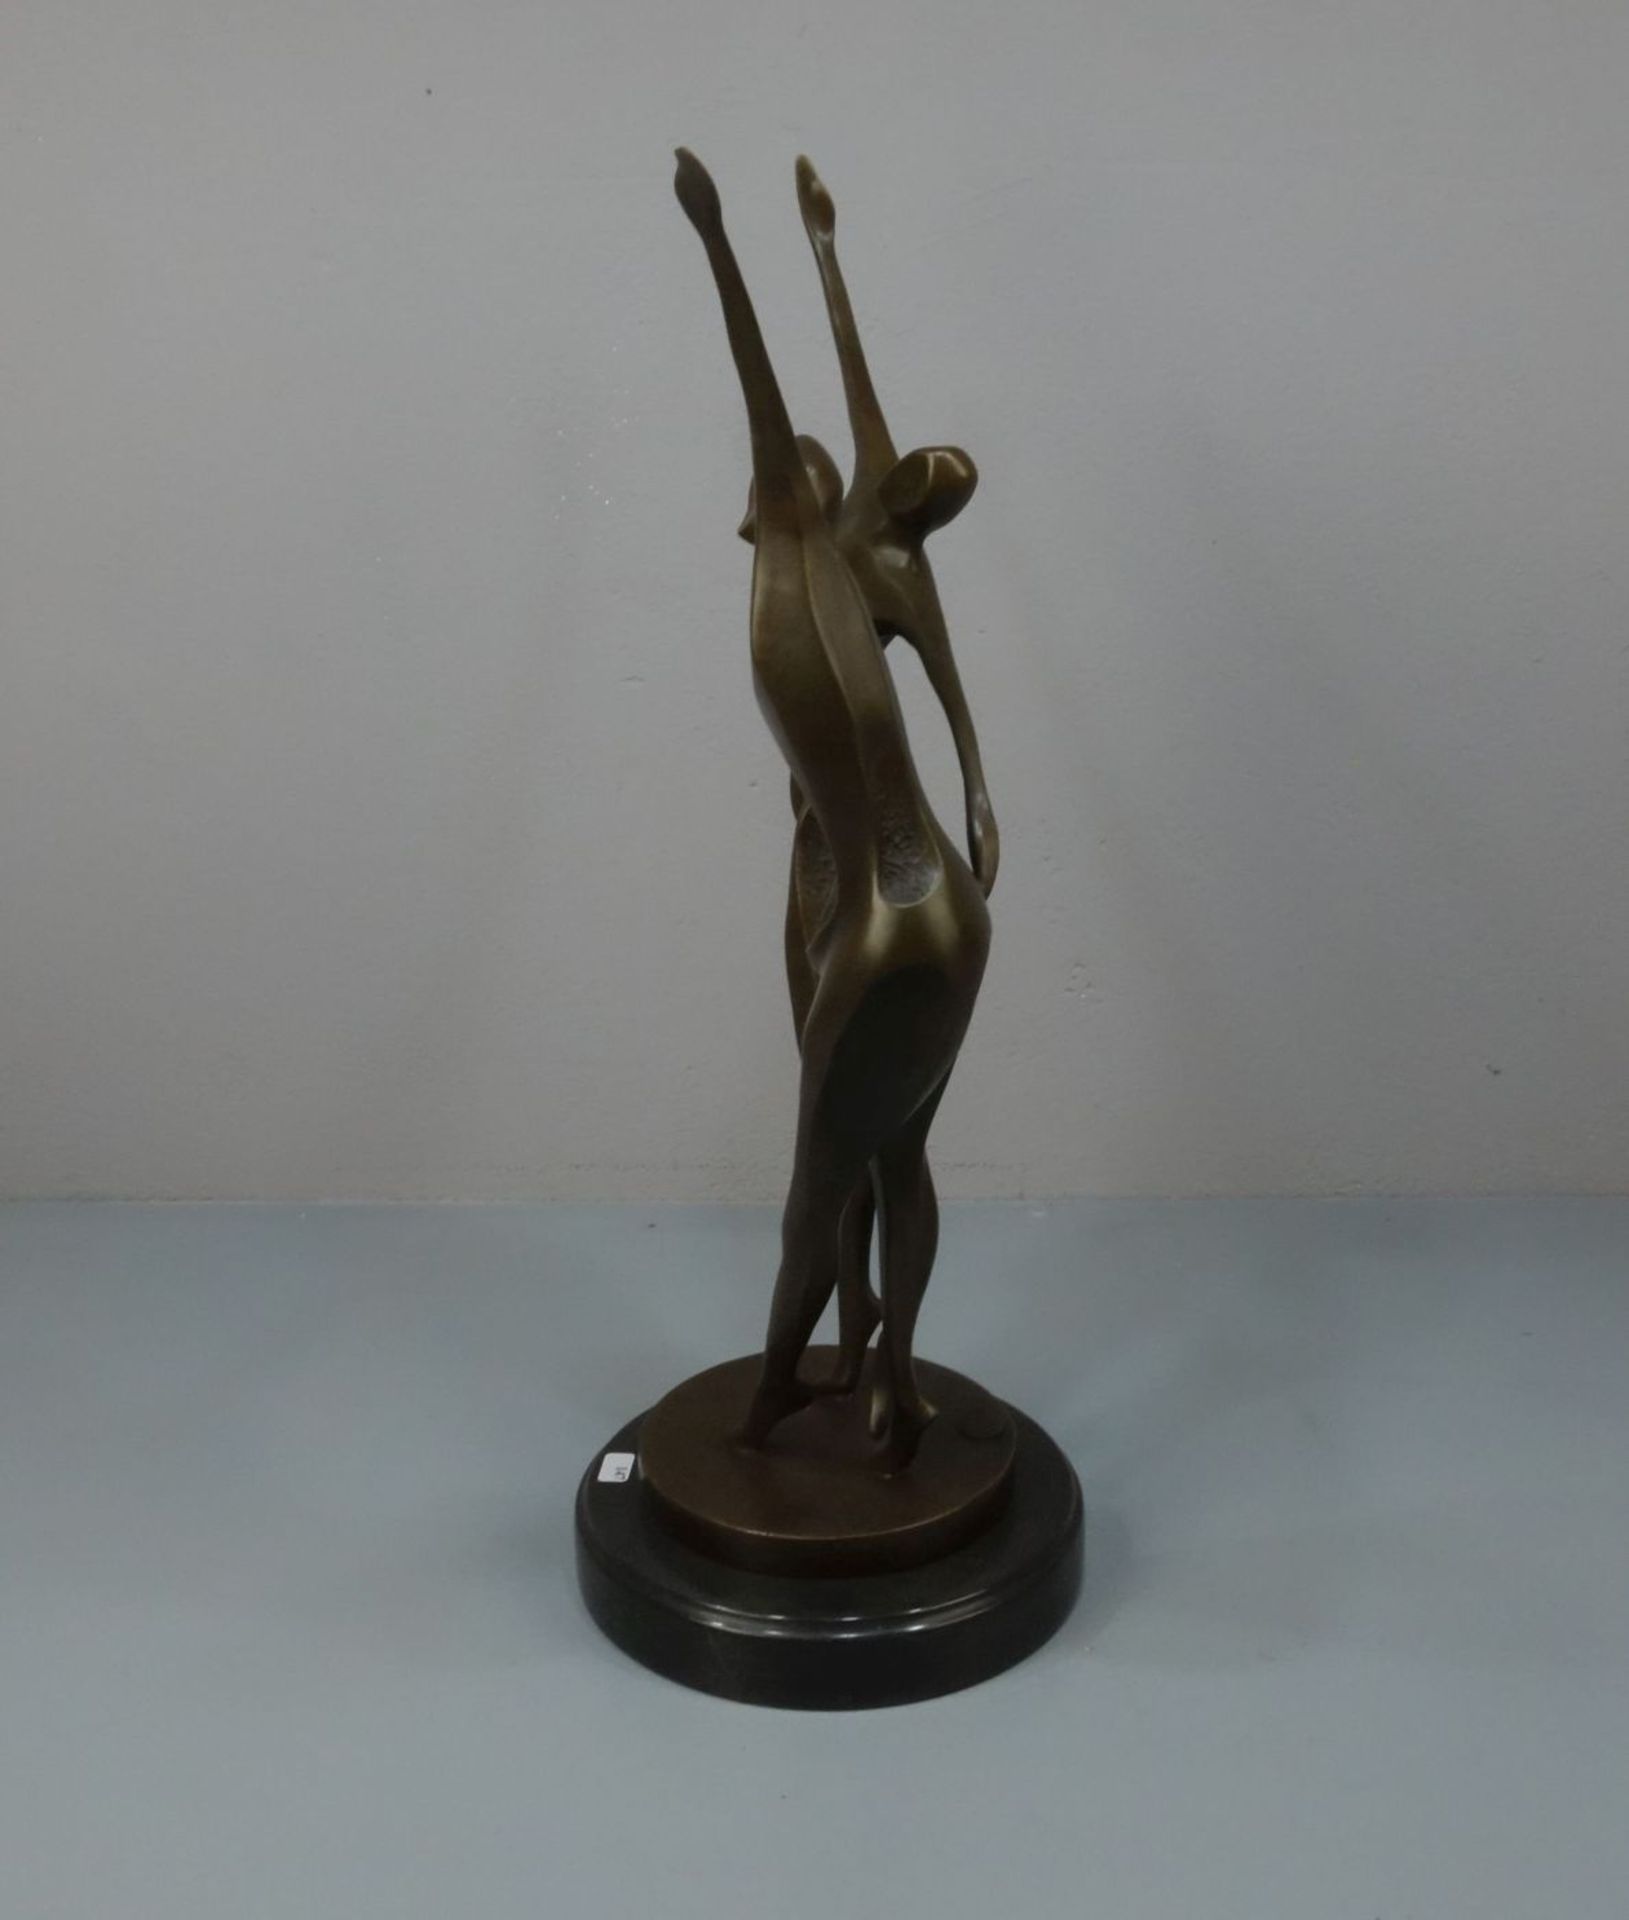 LOPEZ, MIGUEL FERNANDO (auch Milo, geb. 1955 in Lissabon), Skulptur / sculpture: "Tanzendes Paar", - Image 2 of 6